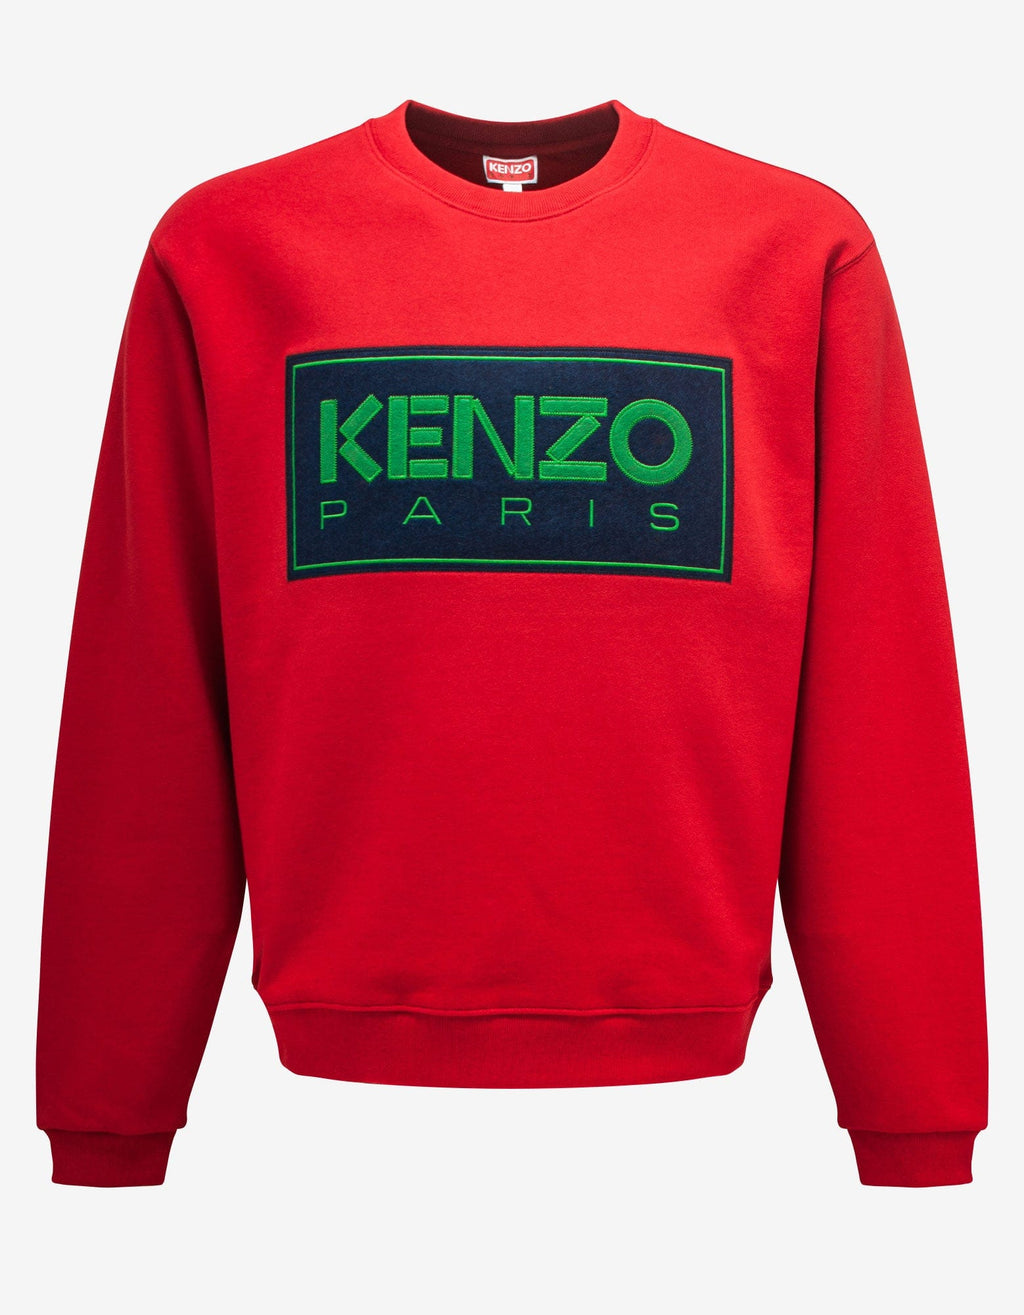 Kenzo Kenzo Red Paris Classic Sweatshirt